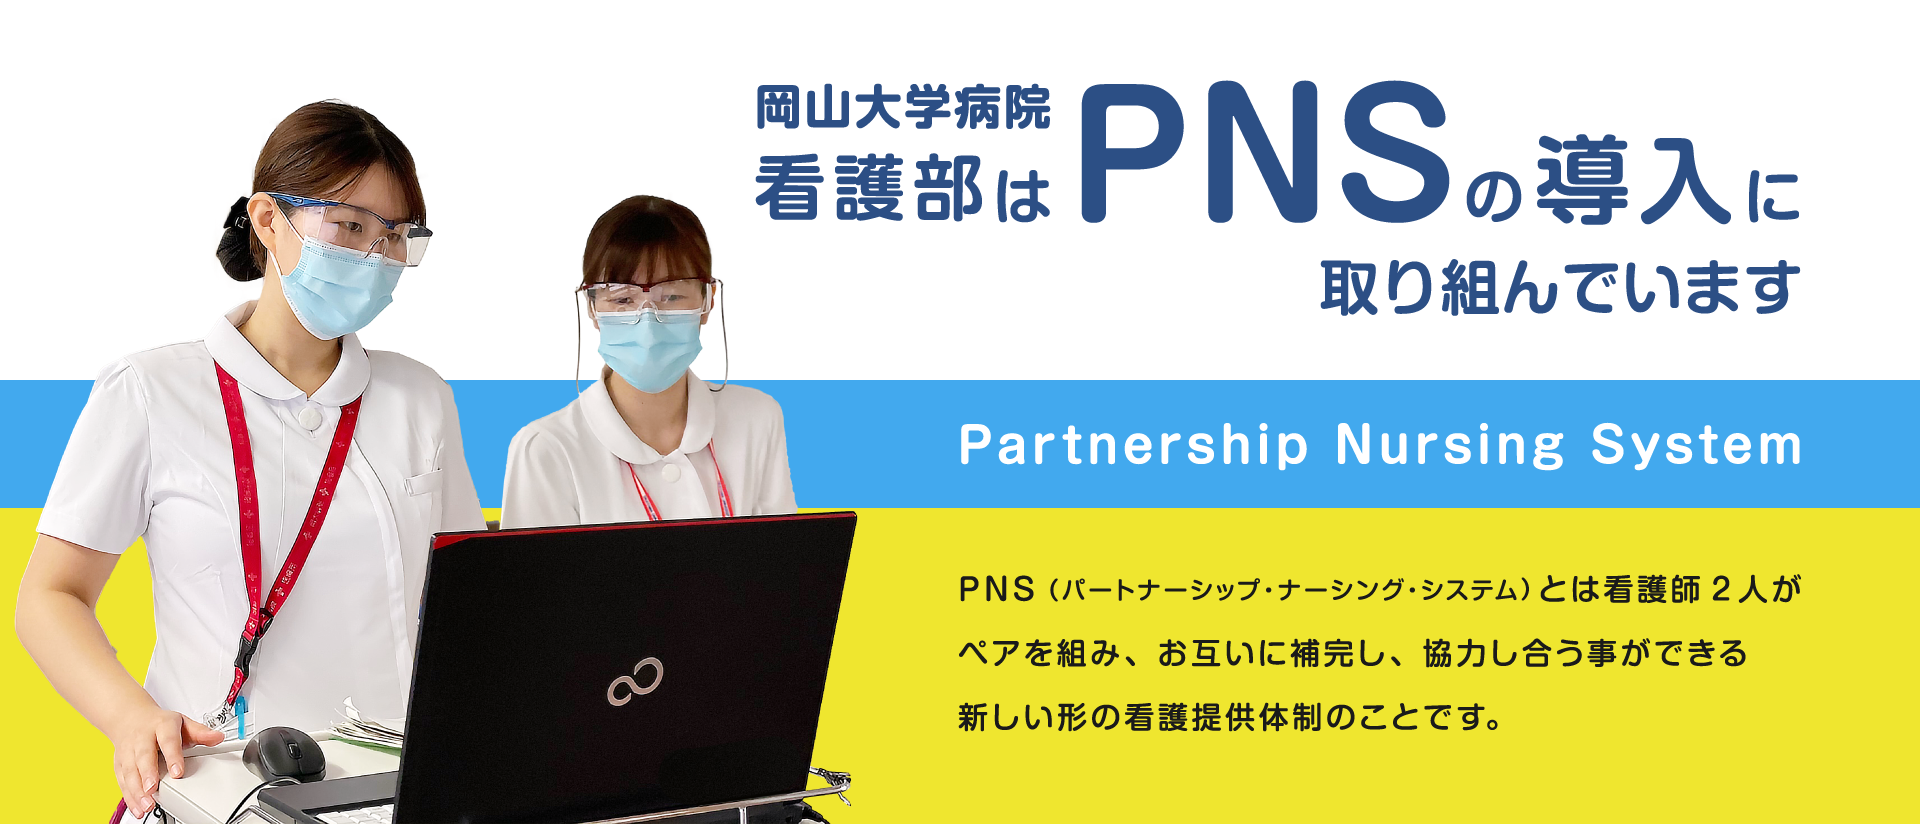 岡山大学病院看護部はPNSを採用しています